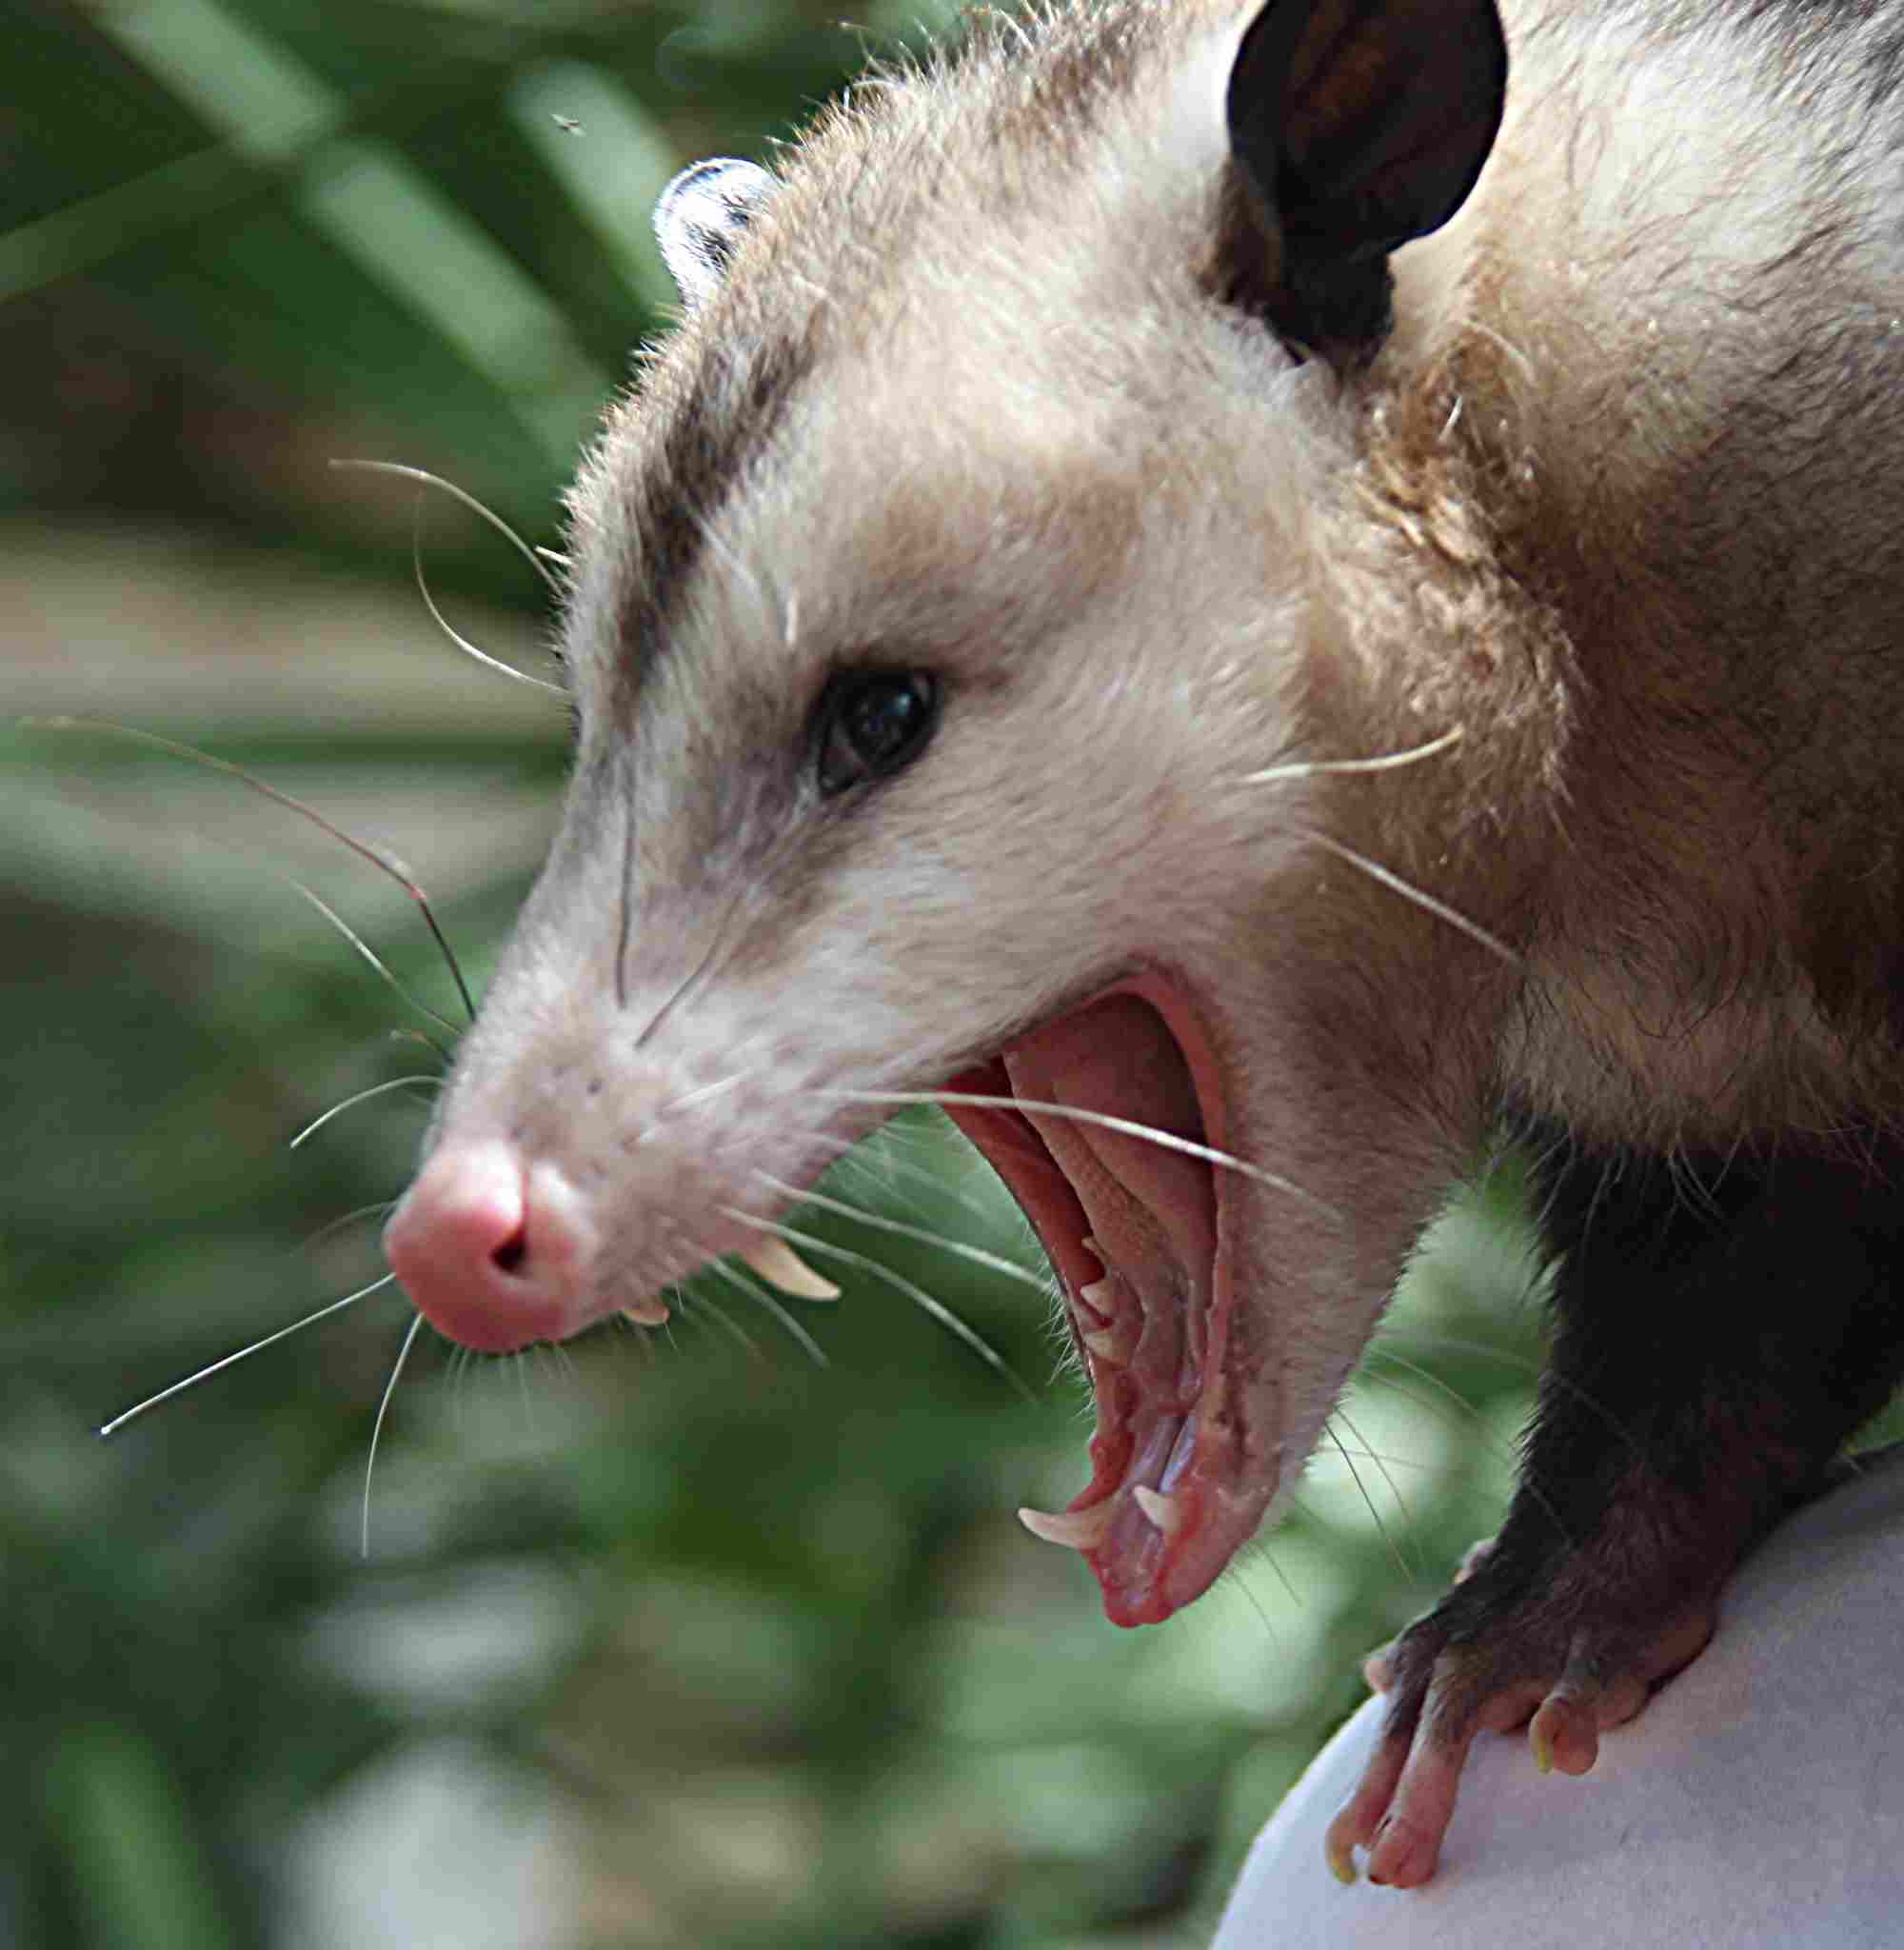 Possum Vs Opossum